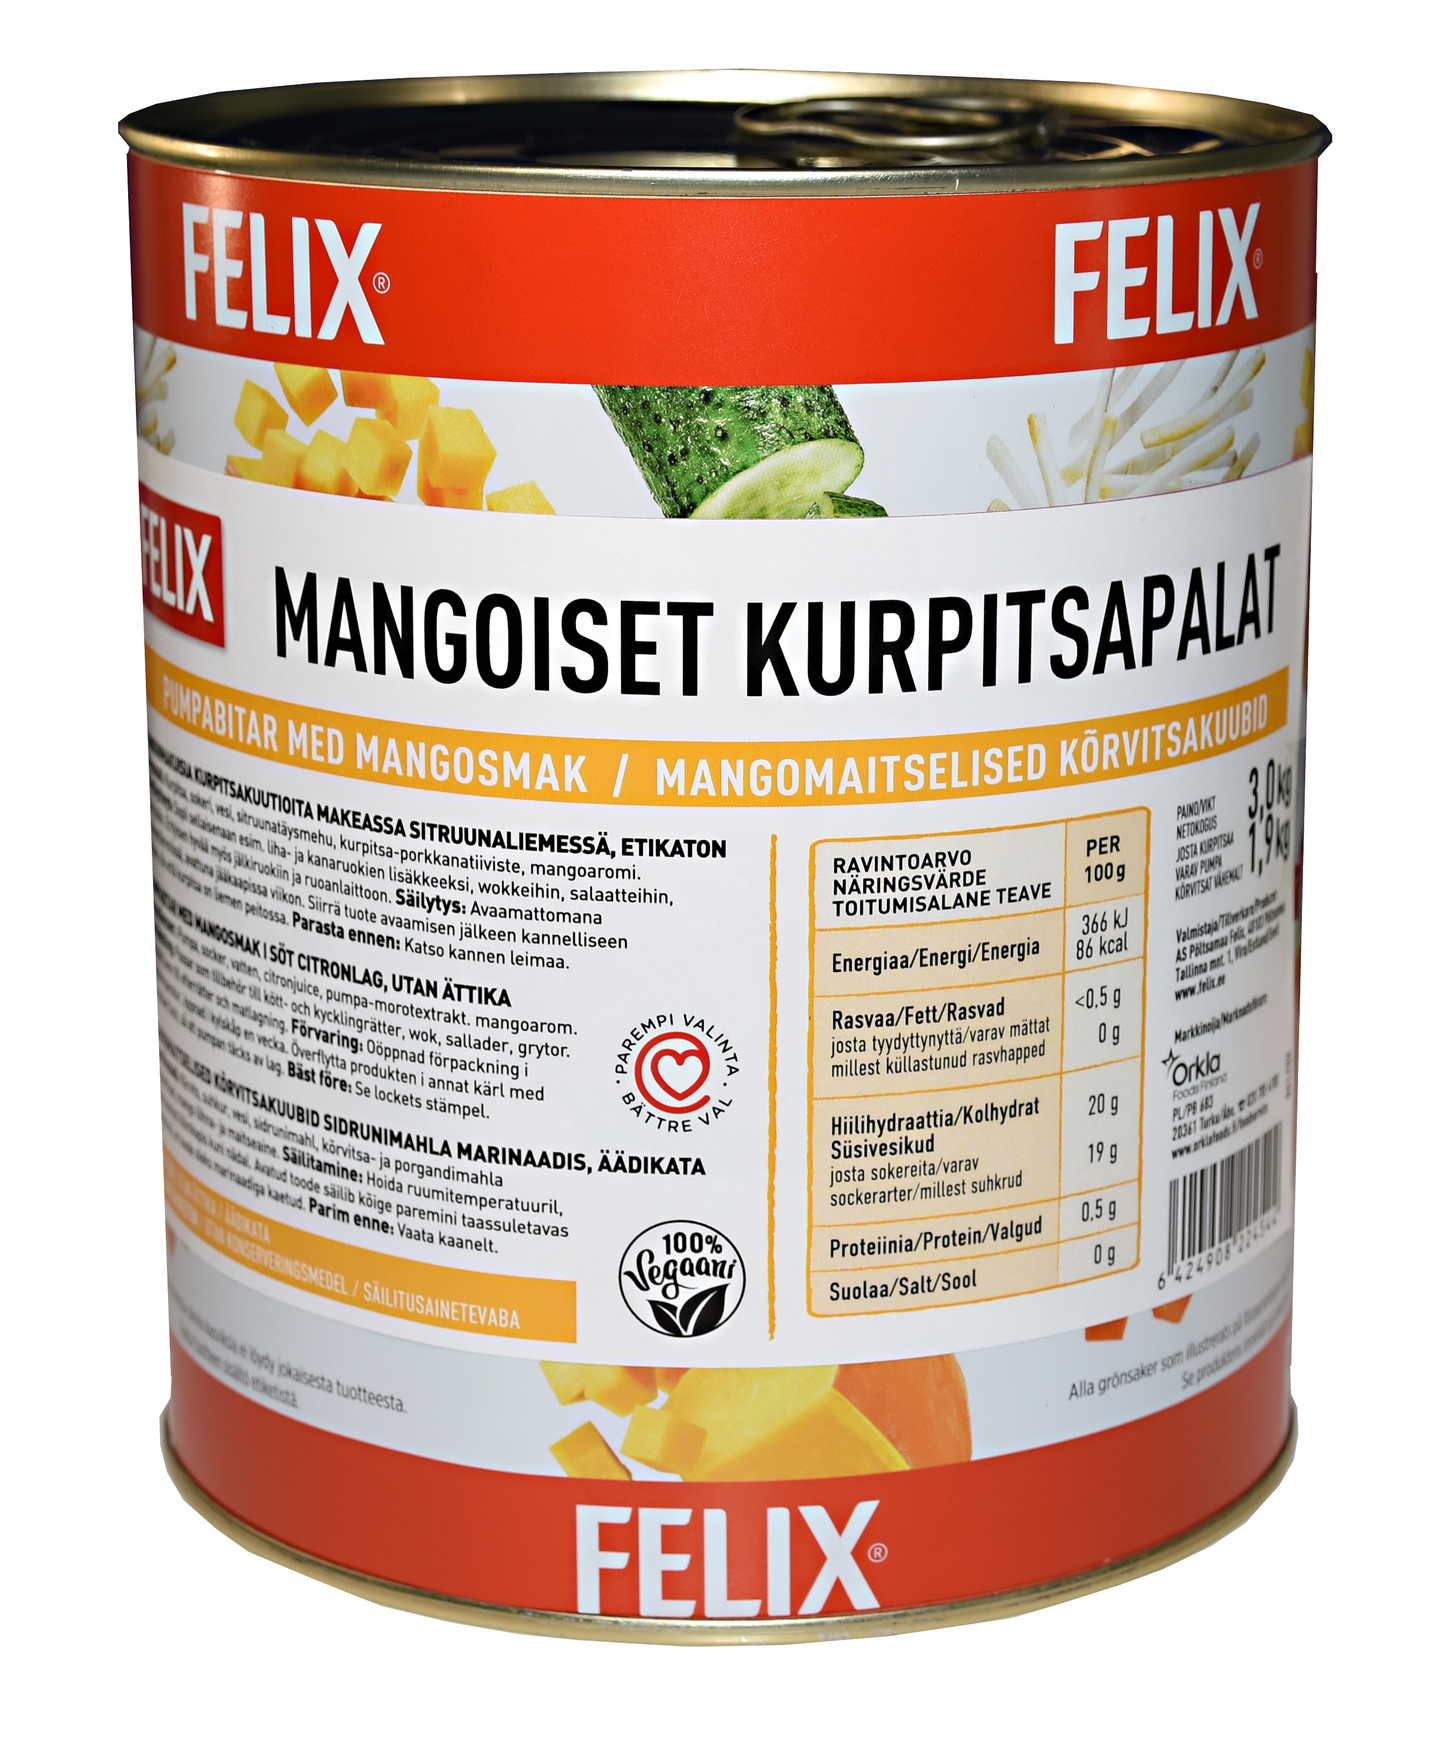 Felix mangoiset kurpitsapalat mausteliemessä etikaton 3,0kg/1,9kg